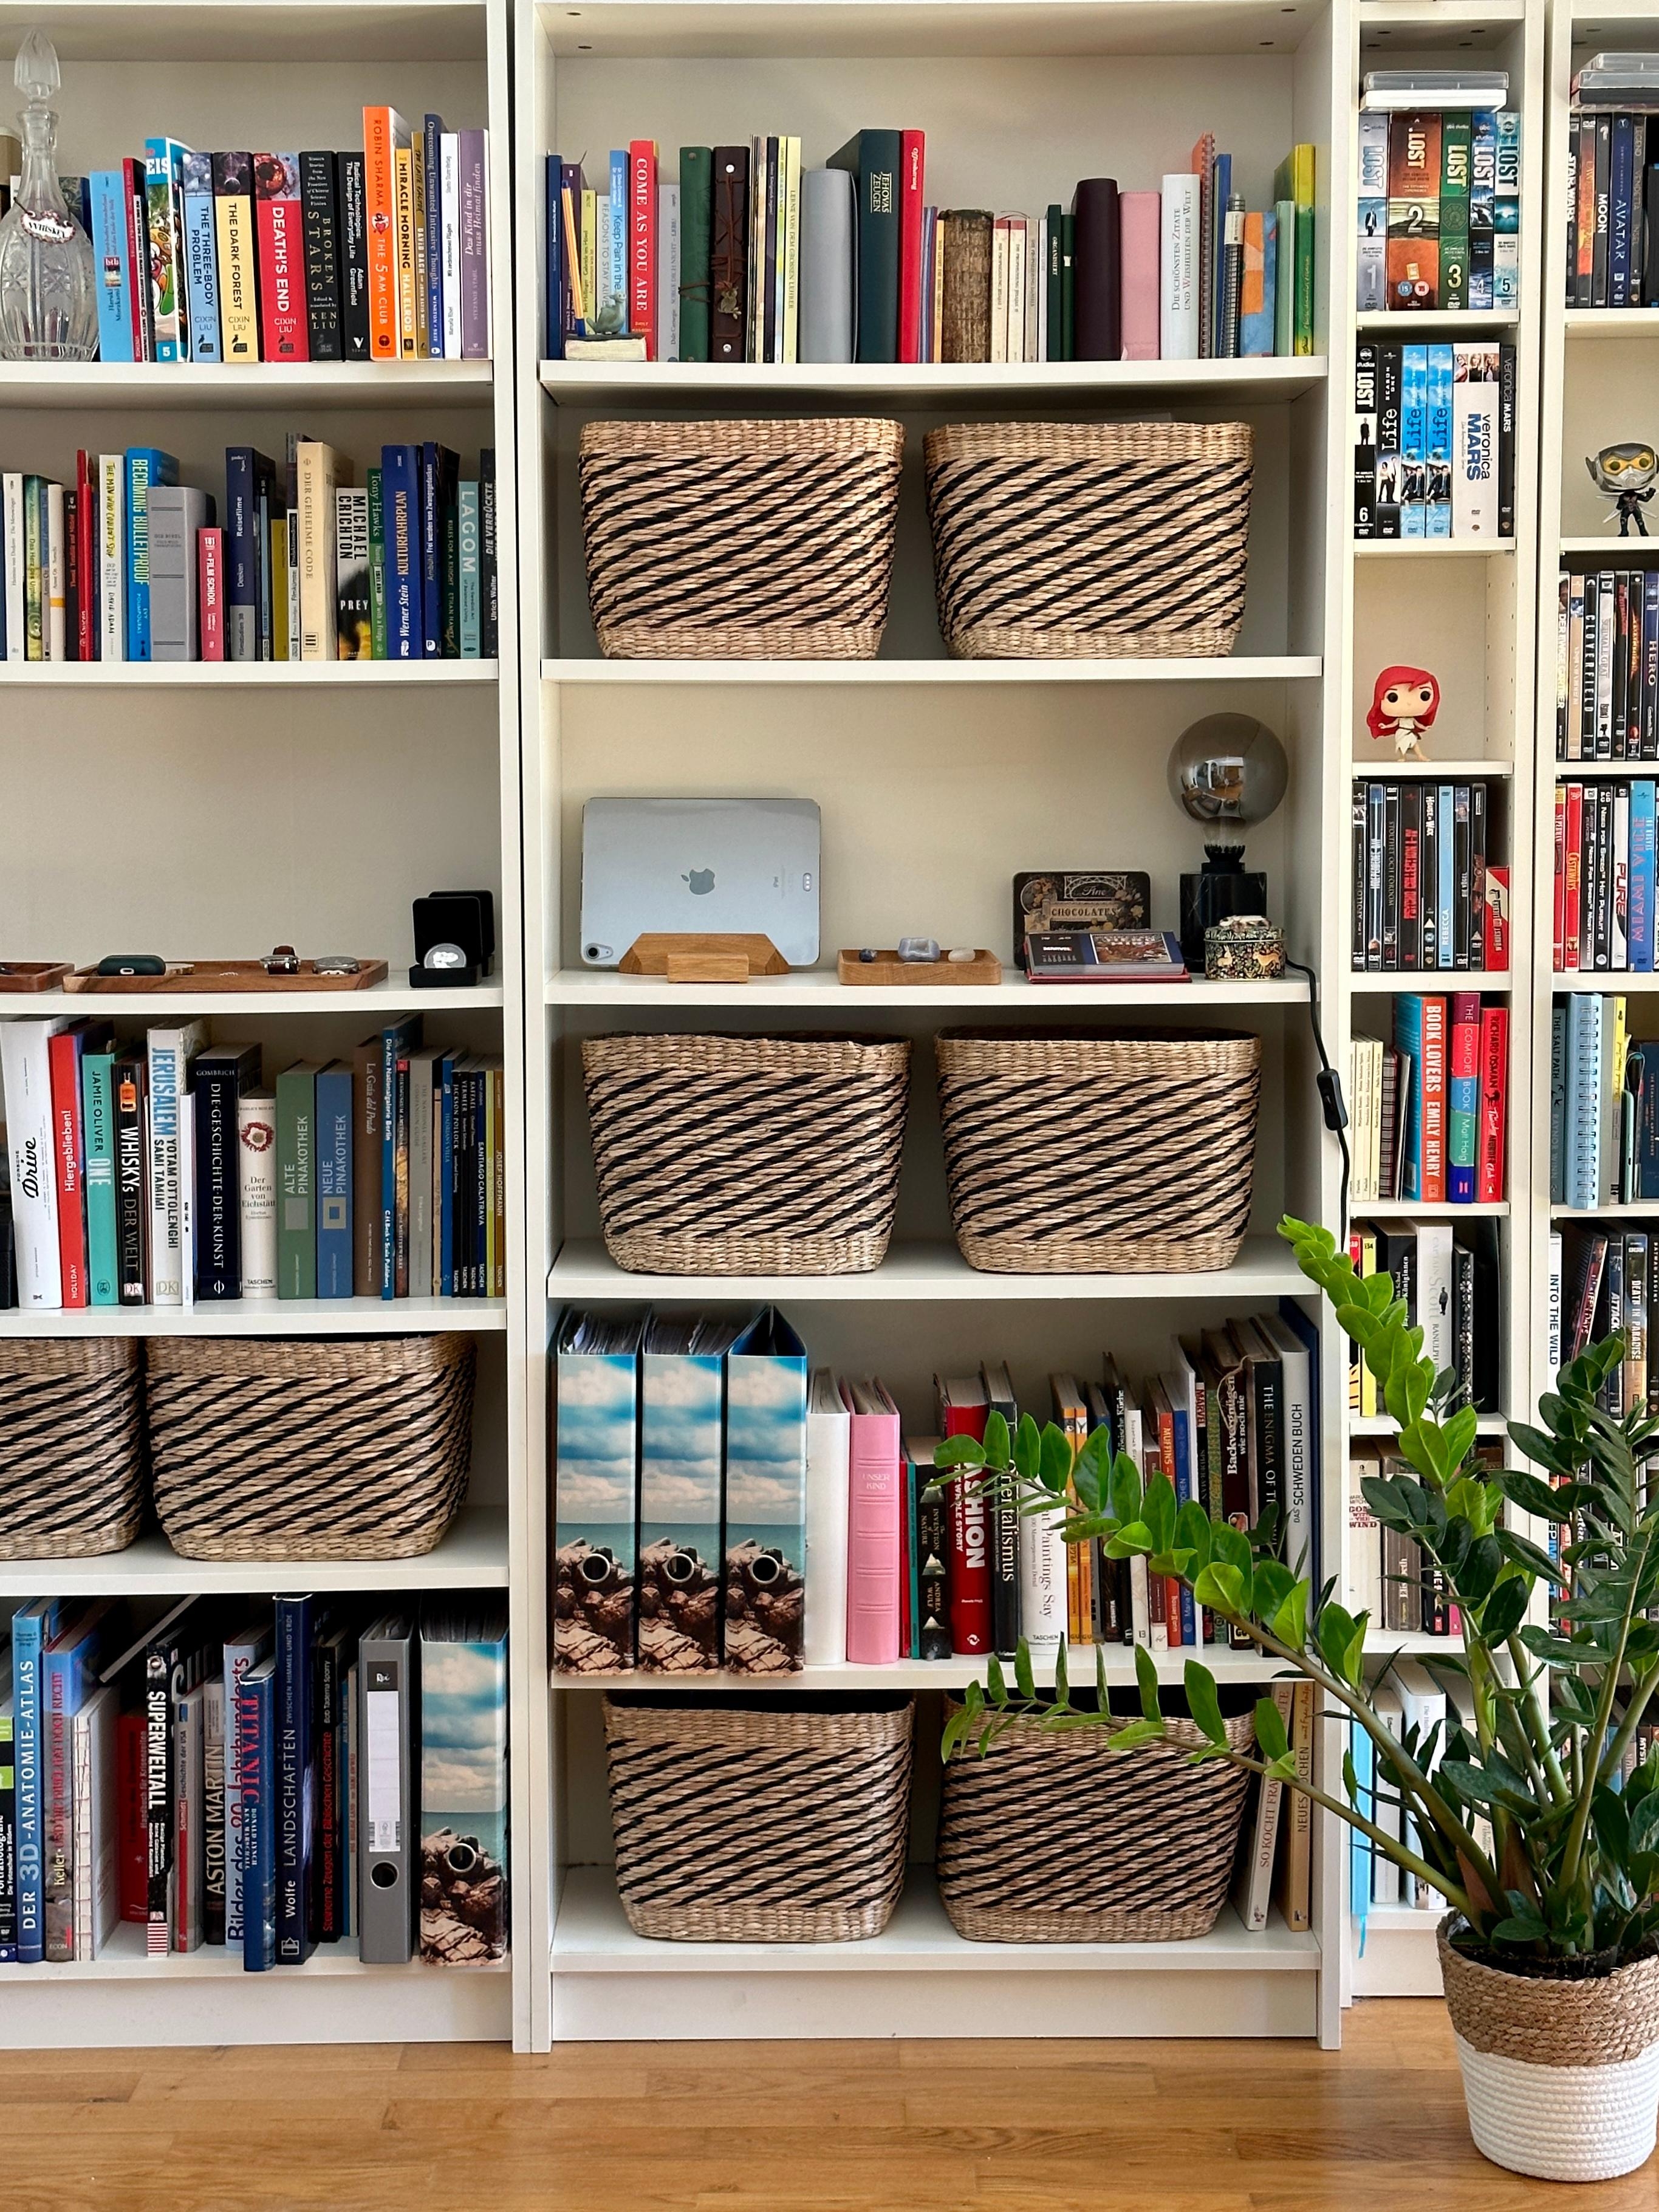 Bücherliebe 🤎
#wohnzimmer #couchstyle #couchliebt #kleinewohnung #bücherregal #dachgeschoss